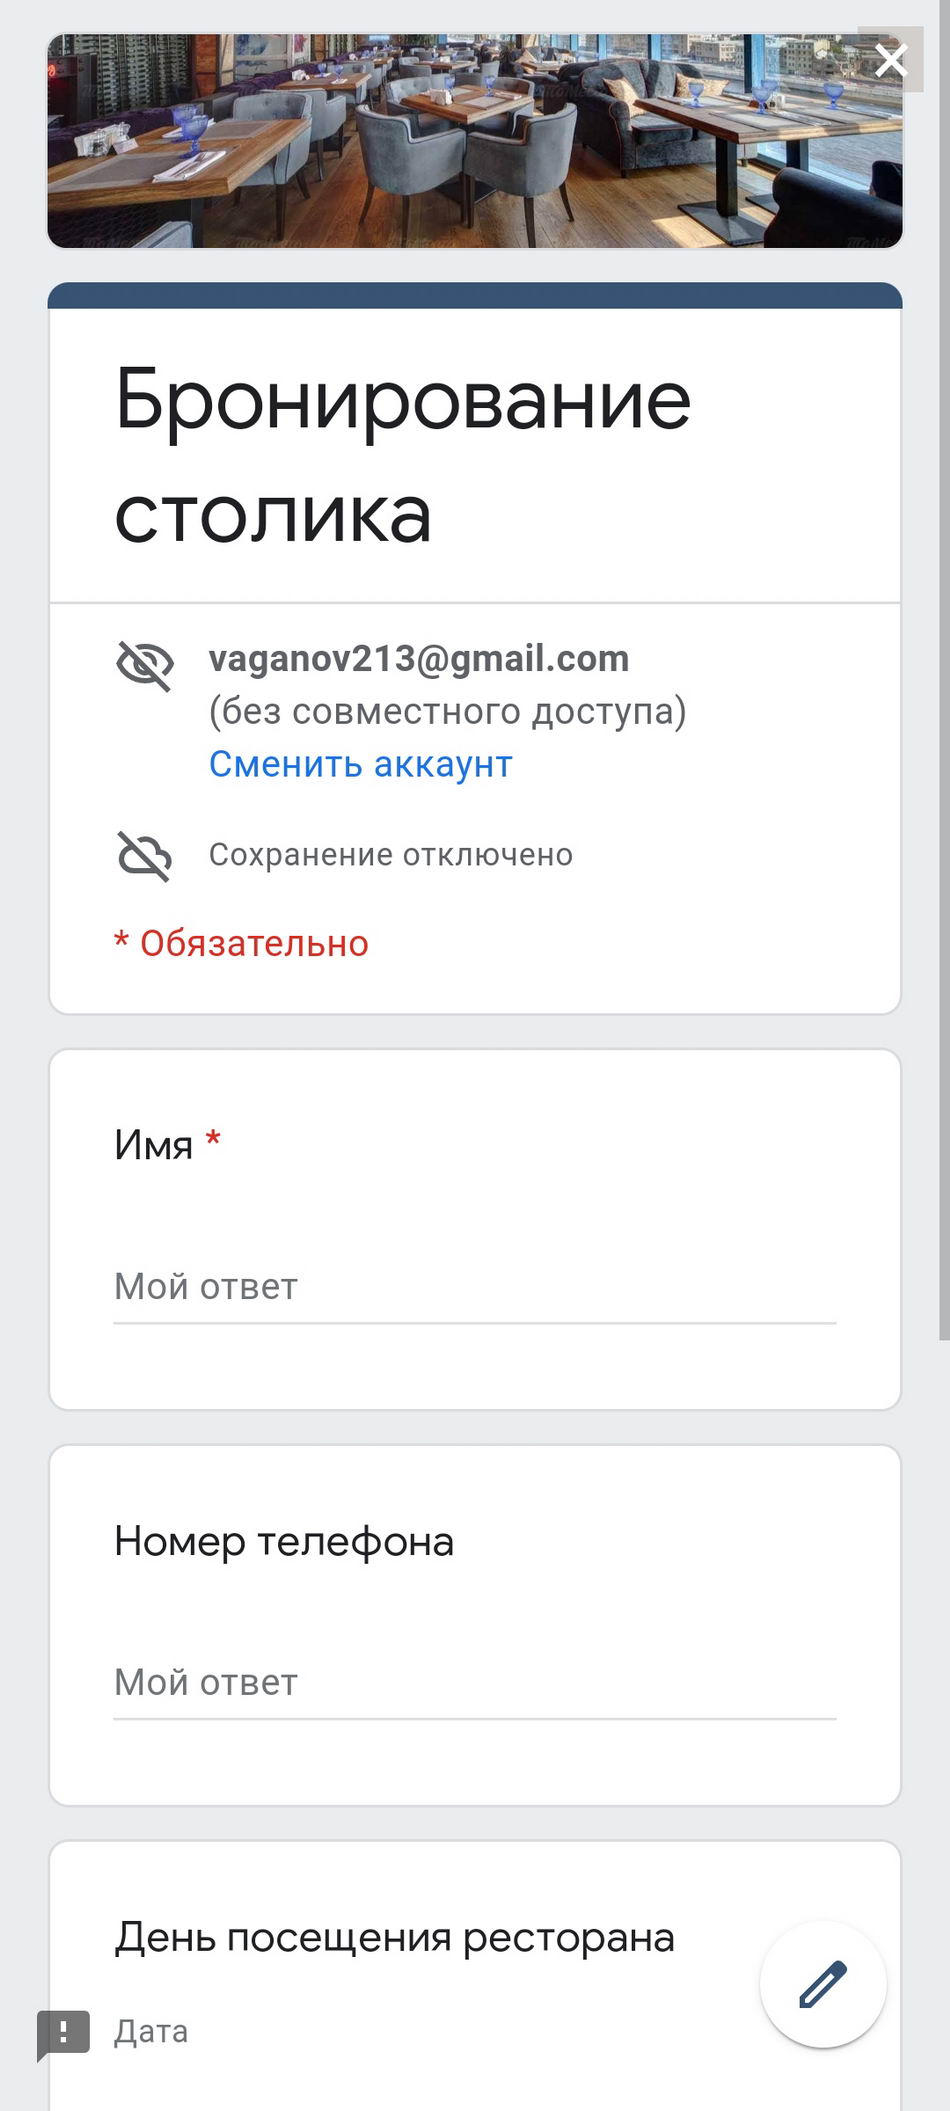 Добавление в 3д тур Яндекс и Google формы для сборка данных